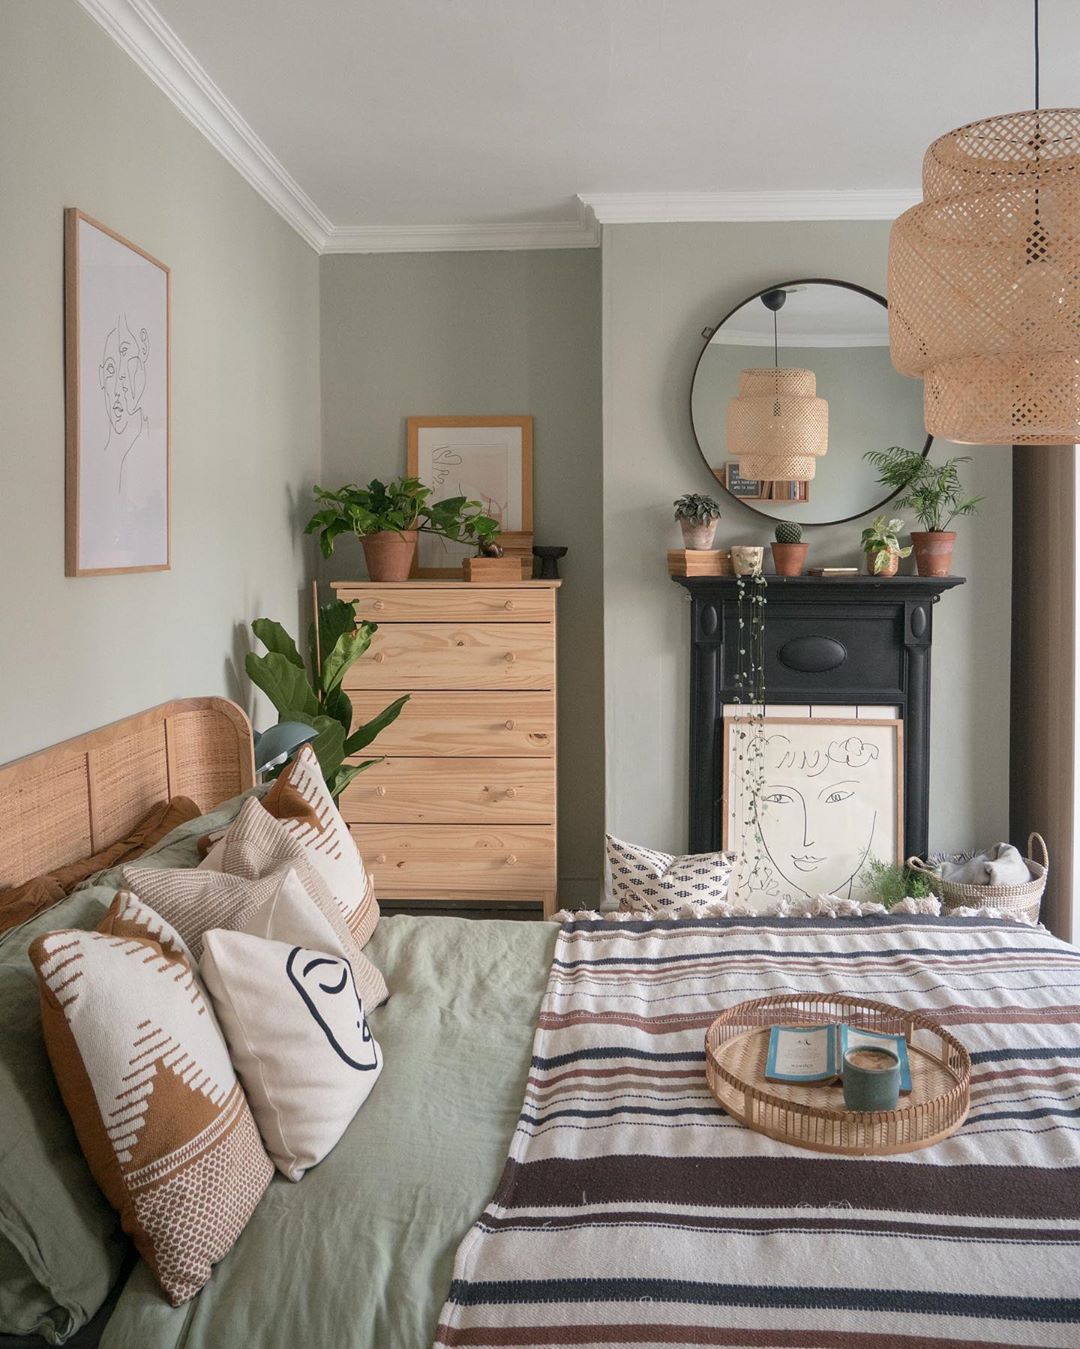 cozy bedroom interior design